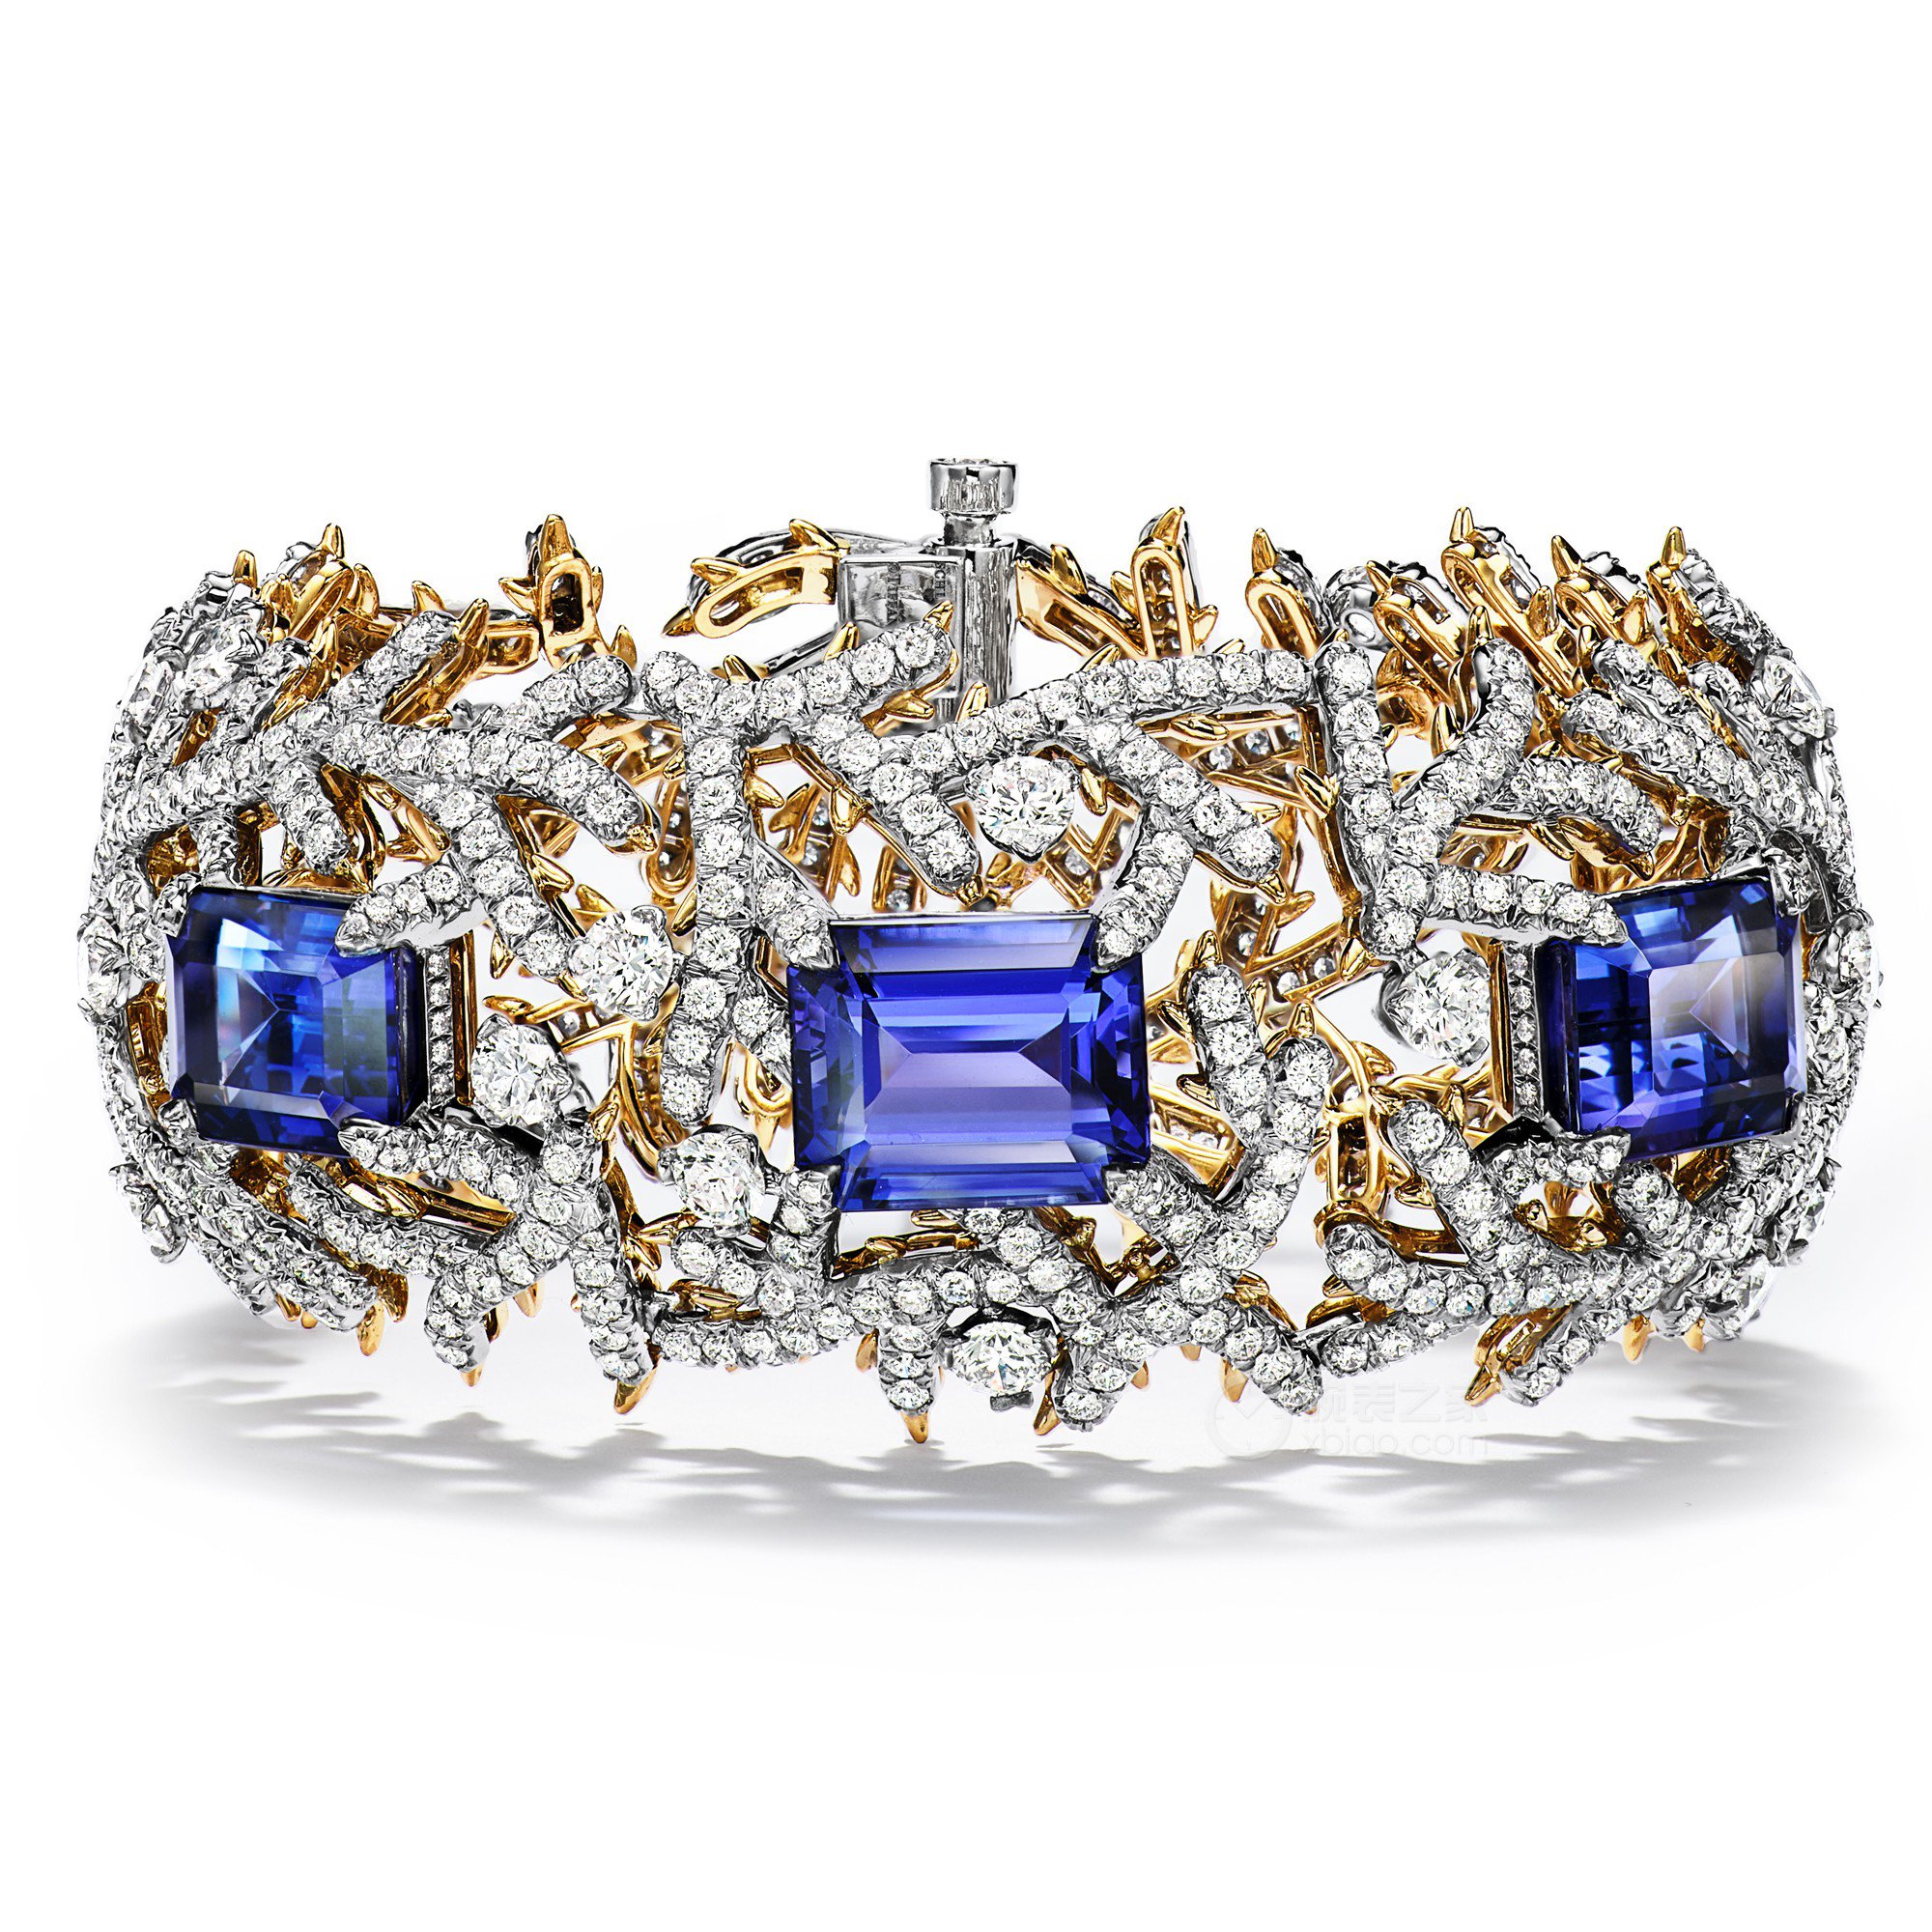 蒂芙尼BLUE BOOK高级珠宝铂金及18K黄金镶嵌总重逾25克拉的坦桑石及钻石手镯手镯